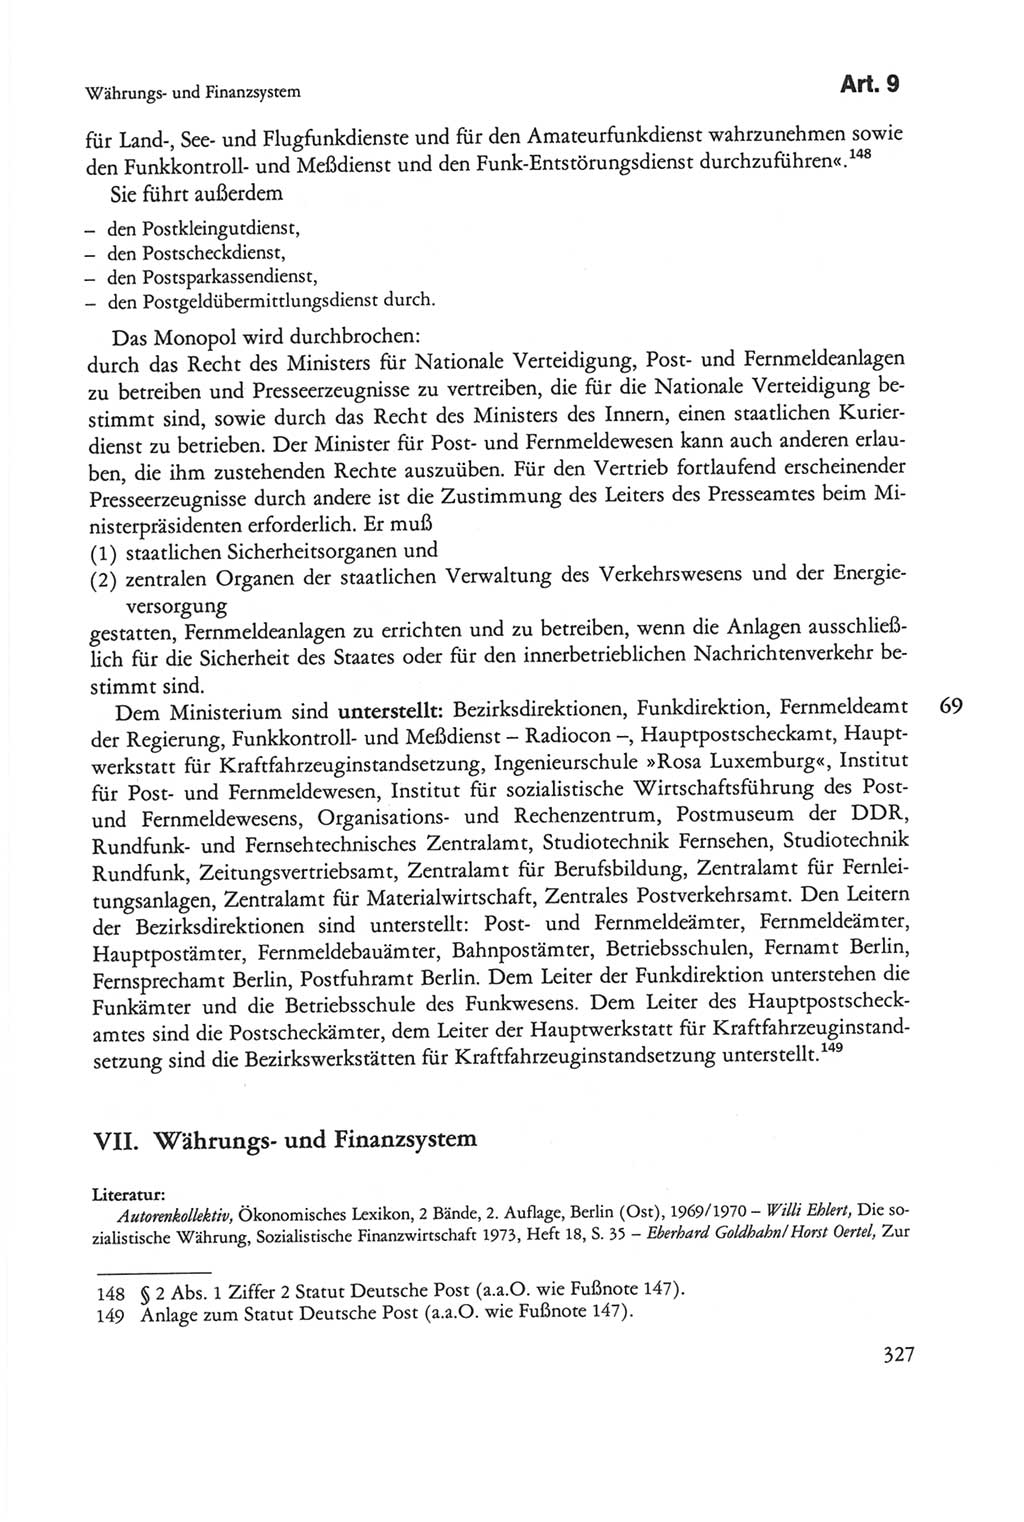 Die sozialistische Verfassung der Deutschen Demokratischen Republik (DDR), Kommentar 1982, Seite 327 (Soz. Verf. DDR Komm. 1982, S. 327)